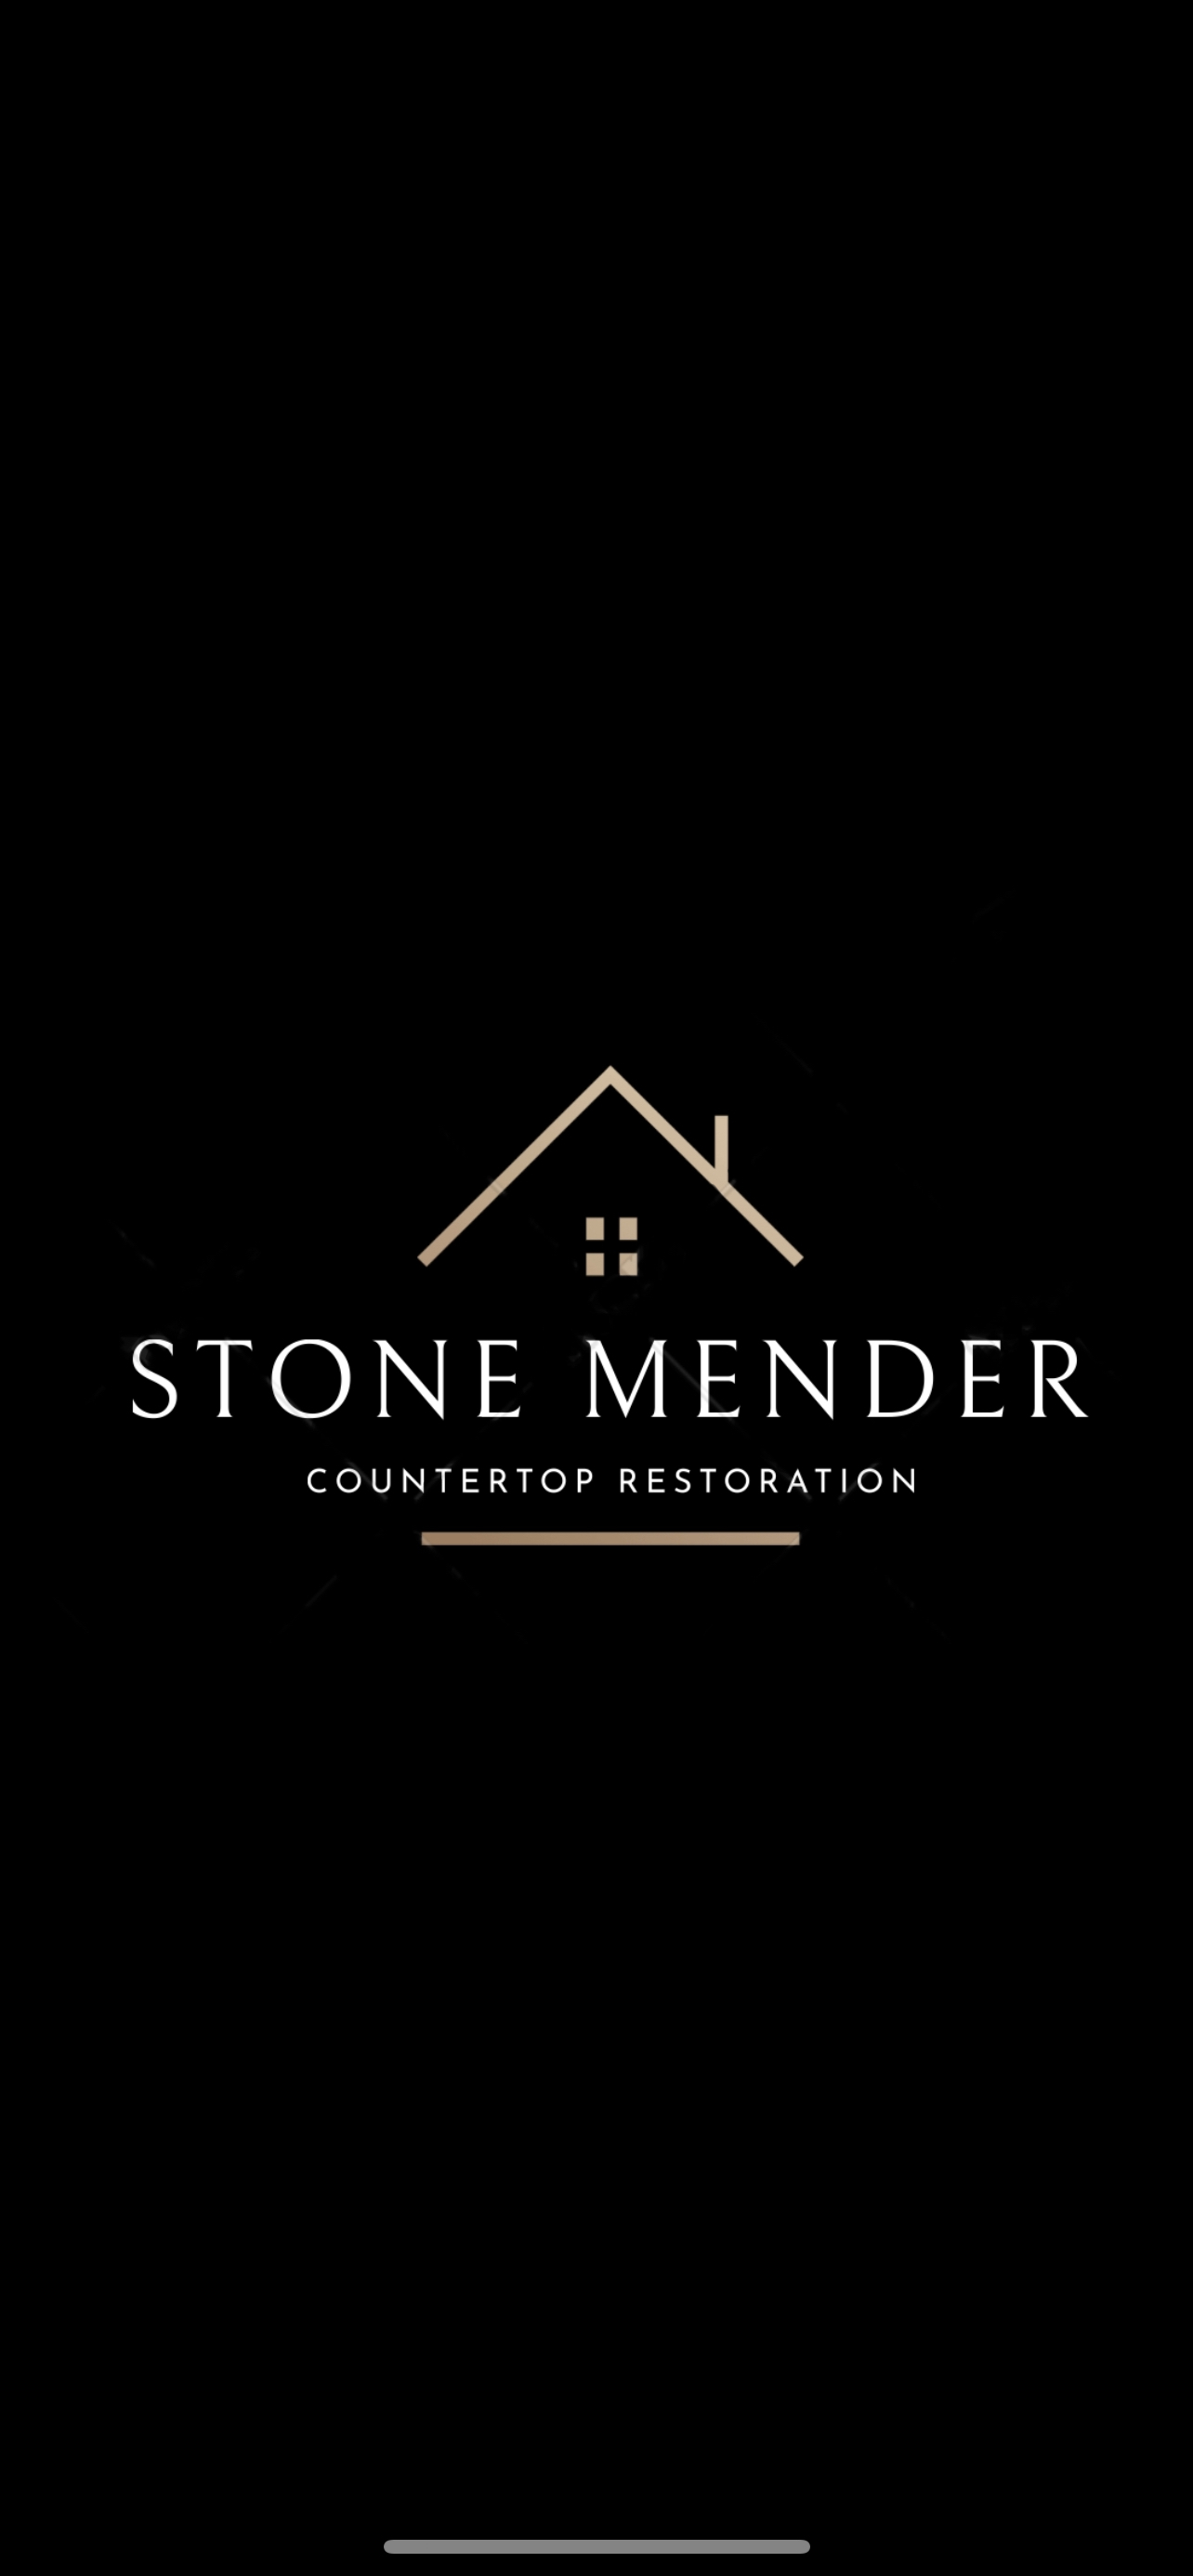 Stone Mender's logo